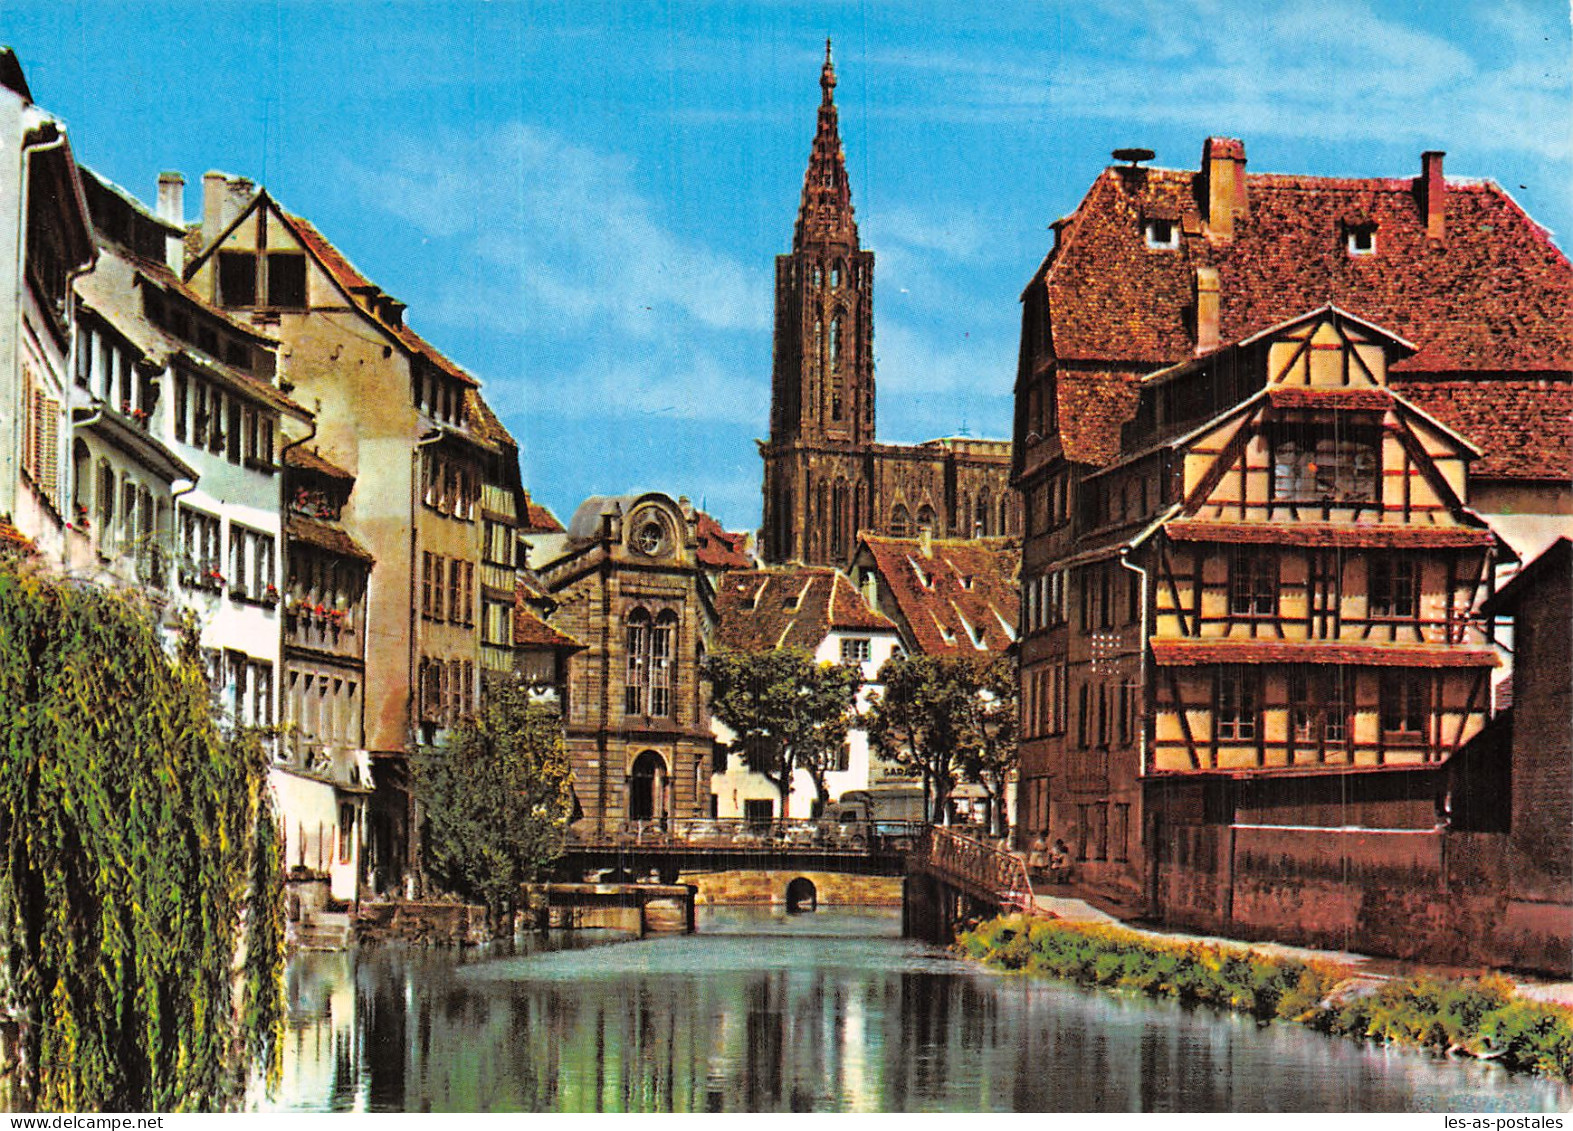 67 STRASBOURG LA CATHEDRALE - Strasbourg